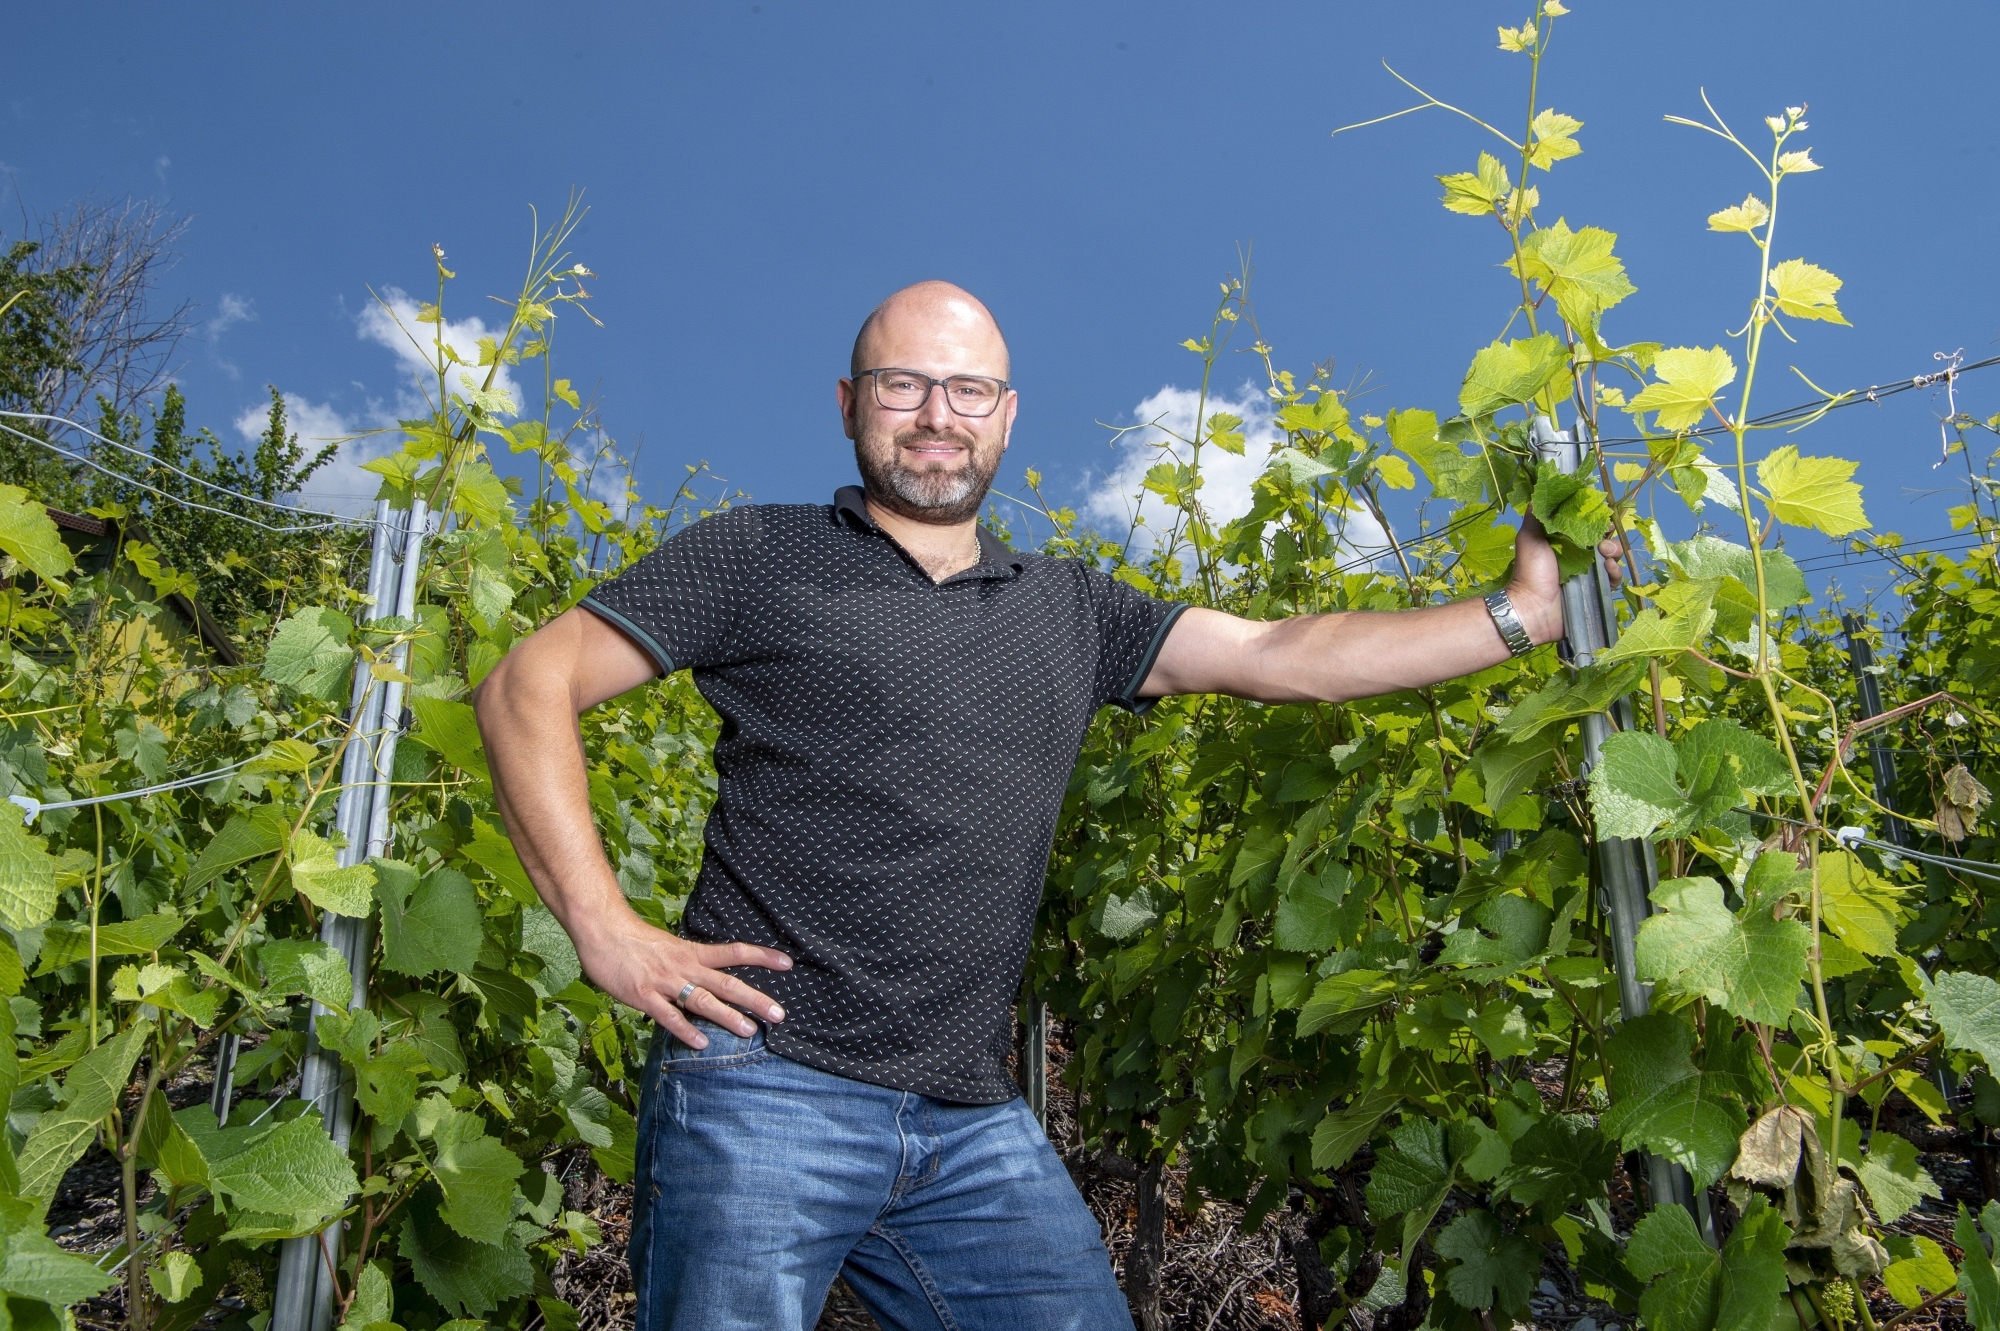 Julien Fournier vinifie ses vins avec rigueur. «Il faut de beaux raisins pour élaborer de grands vins. Je ne collabore qu’avec des gens dont la vigne est le métier.»